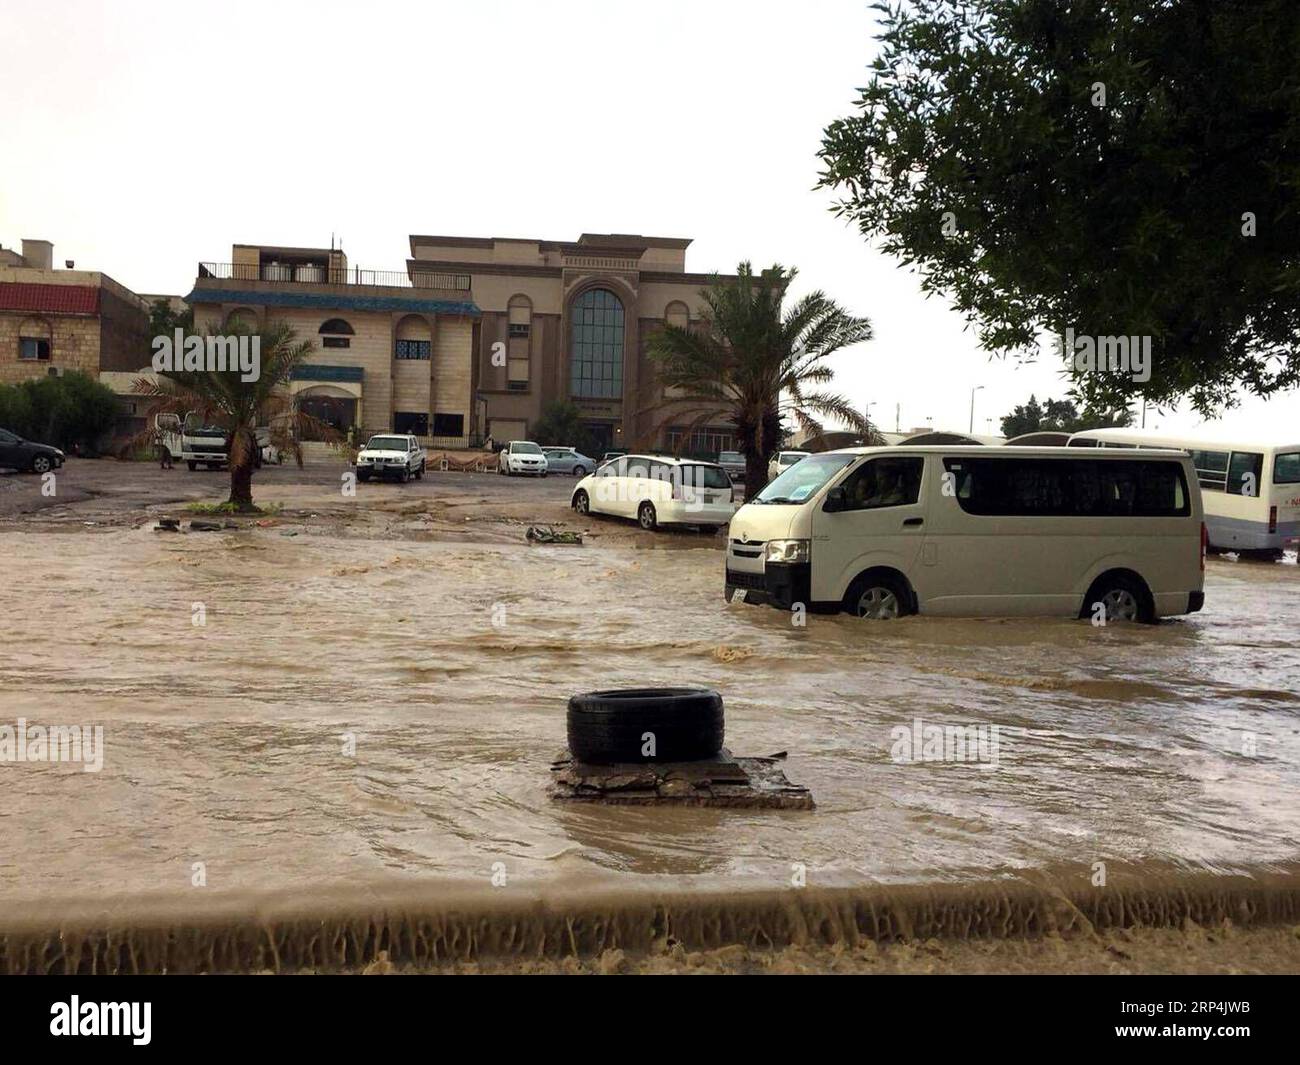 (181110) -- KUWAIT CITY, 10 novembre 2018 -- une photo prise le 10 novembre 2018 montre des véhicules qui roulent dans des eaux de crue dans la région de Fahaheel à Kuwait City, Koweït.) (yg) KUWAIT-KUWAIT CITY-FLOOD JosephxShagra PUBLICATIONxNOTxINxCHN Banque D'Images